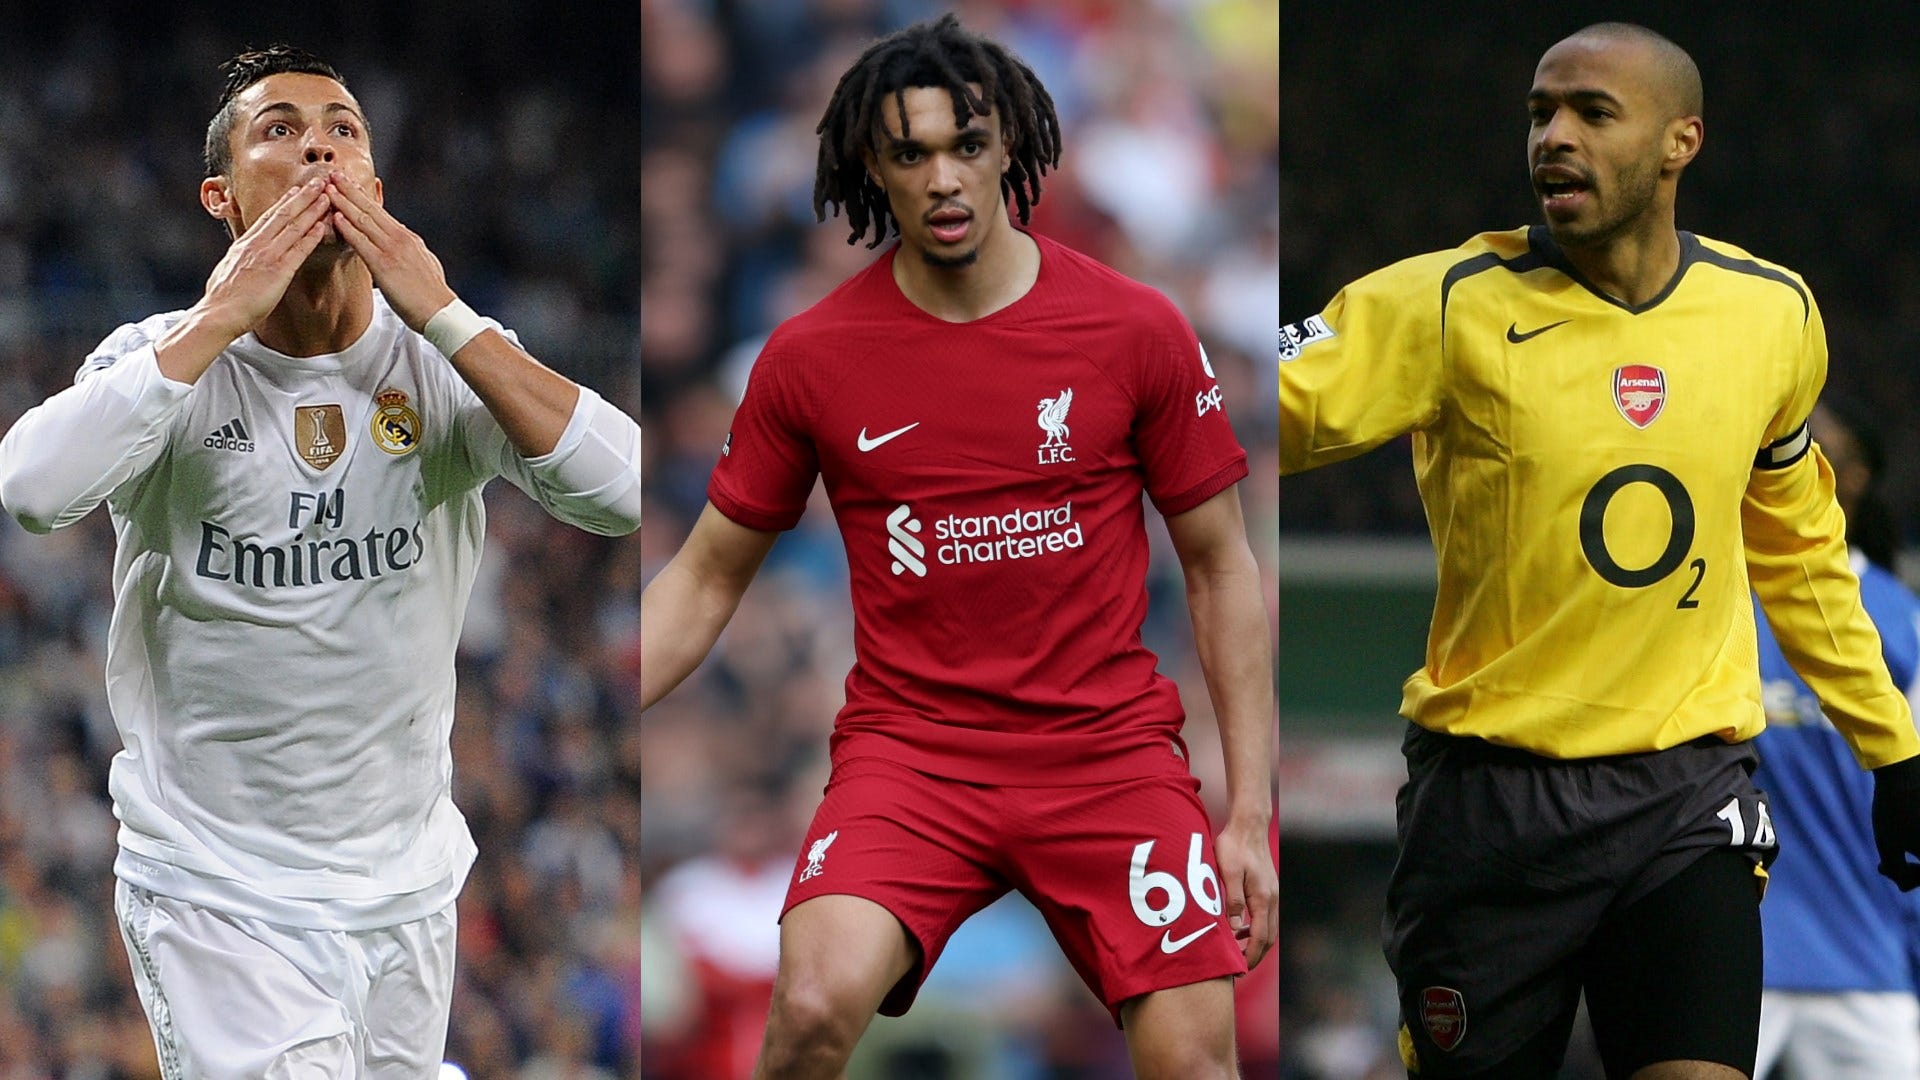 Futbolistas cambiando roles: Cristiano Ronaldo, Thierry Henry y las estrellas Trent Alexander-Arnold podrían seguir